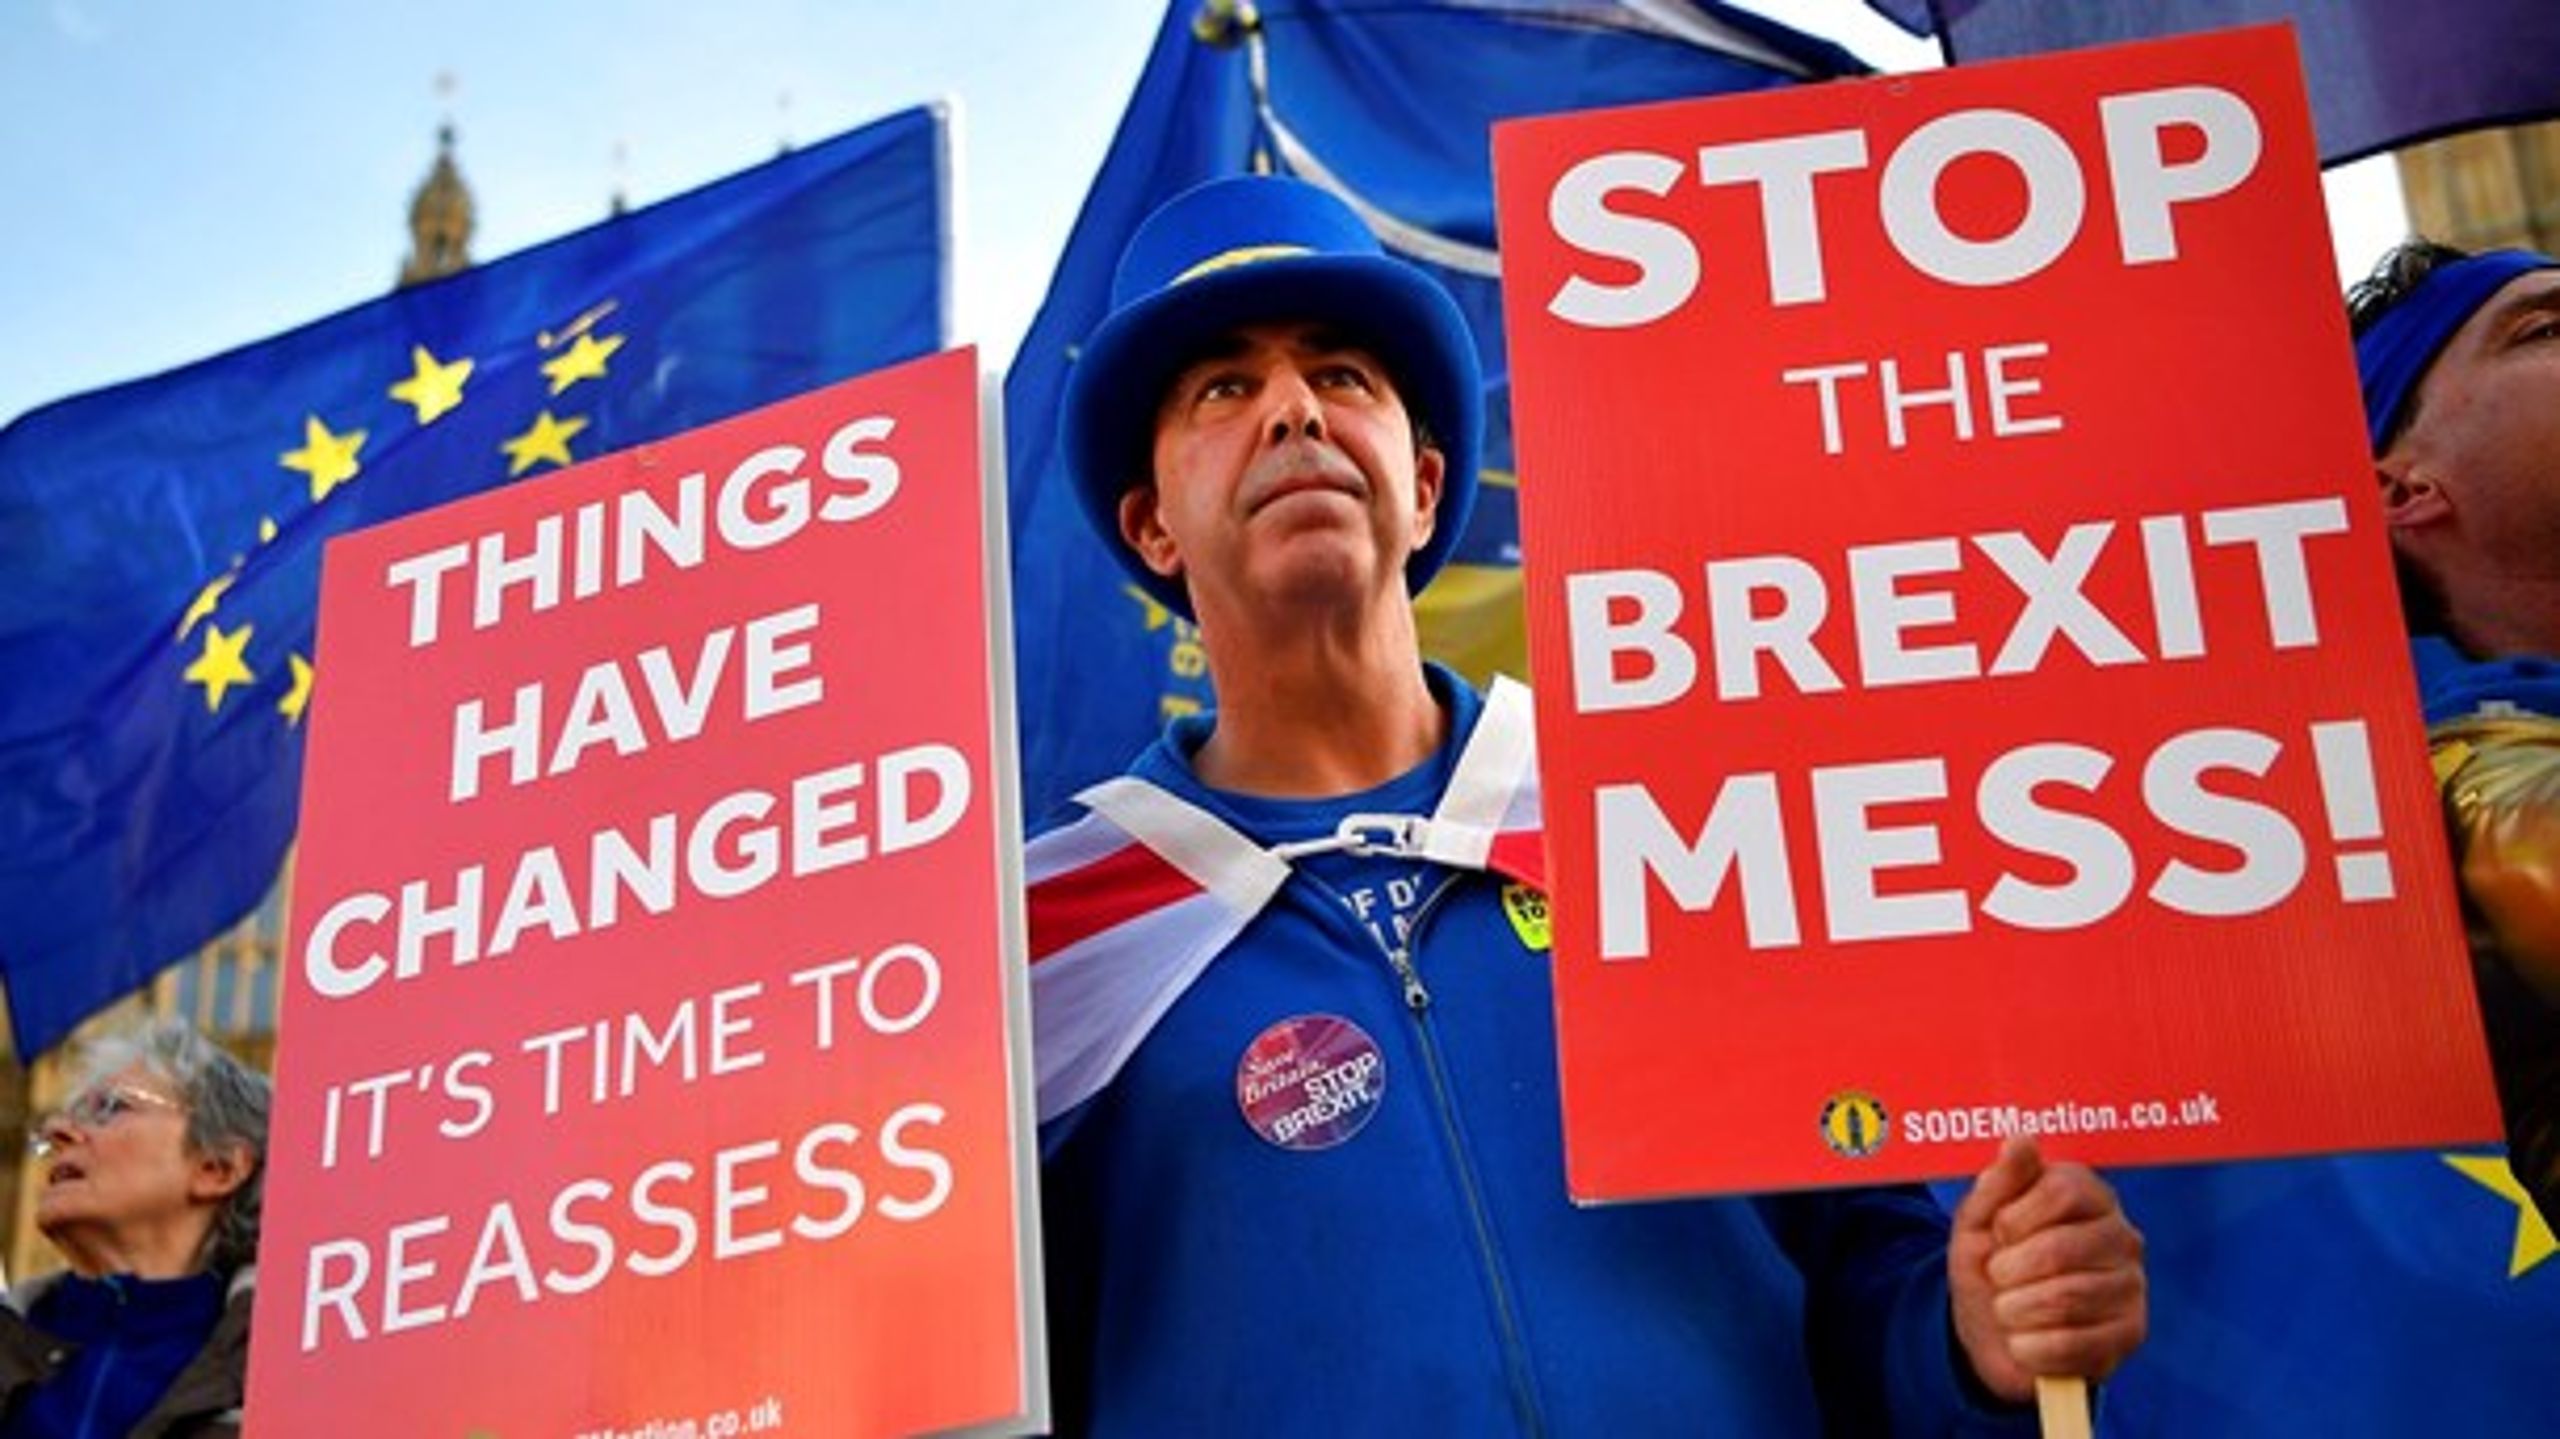 Hvis politikerne i Storbritannien havde indgået et kompromis efter Brexit-afstemningen, kunne situationen være en anden i dag. I stedet endte det i det politiske kaos, som vi for tiden ser i det britiske parlament,&nbsp;mener Louise Lindhagen.